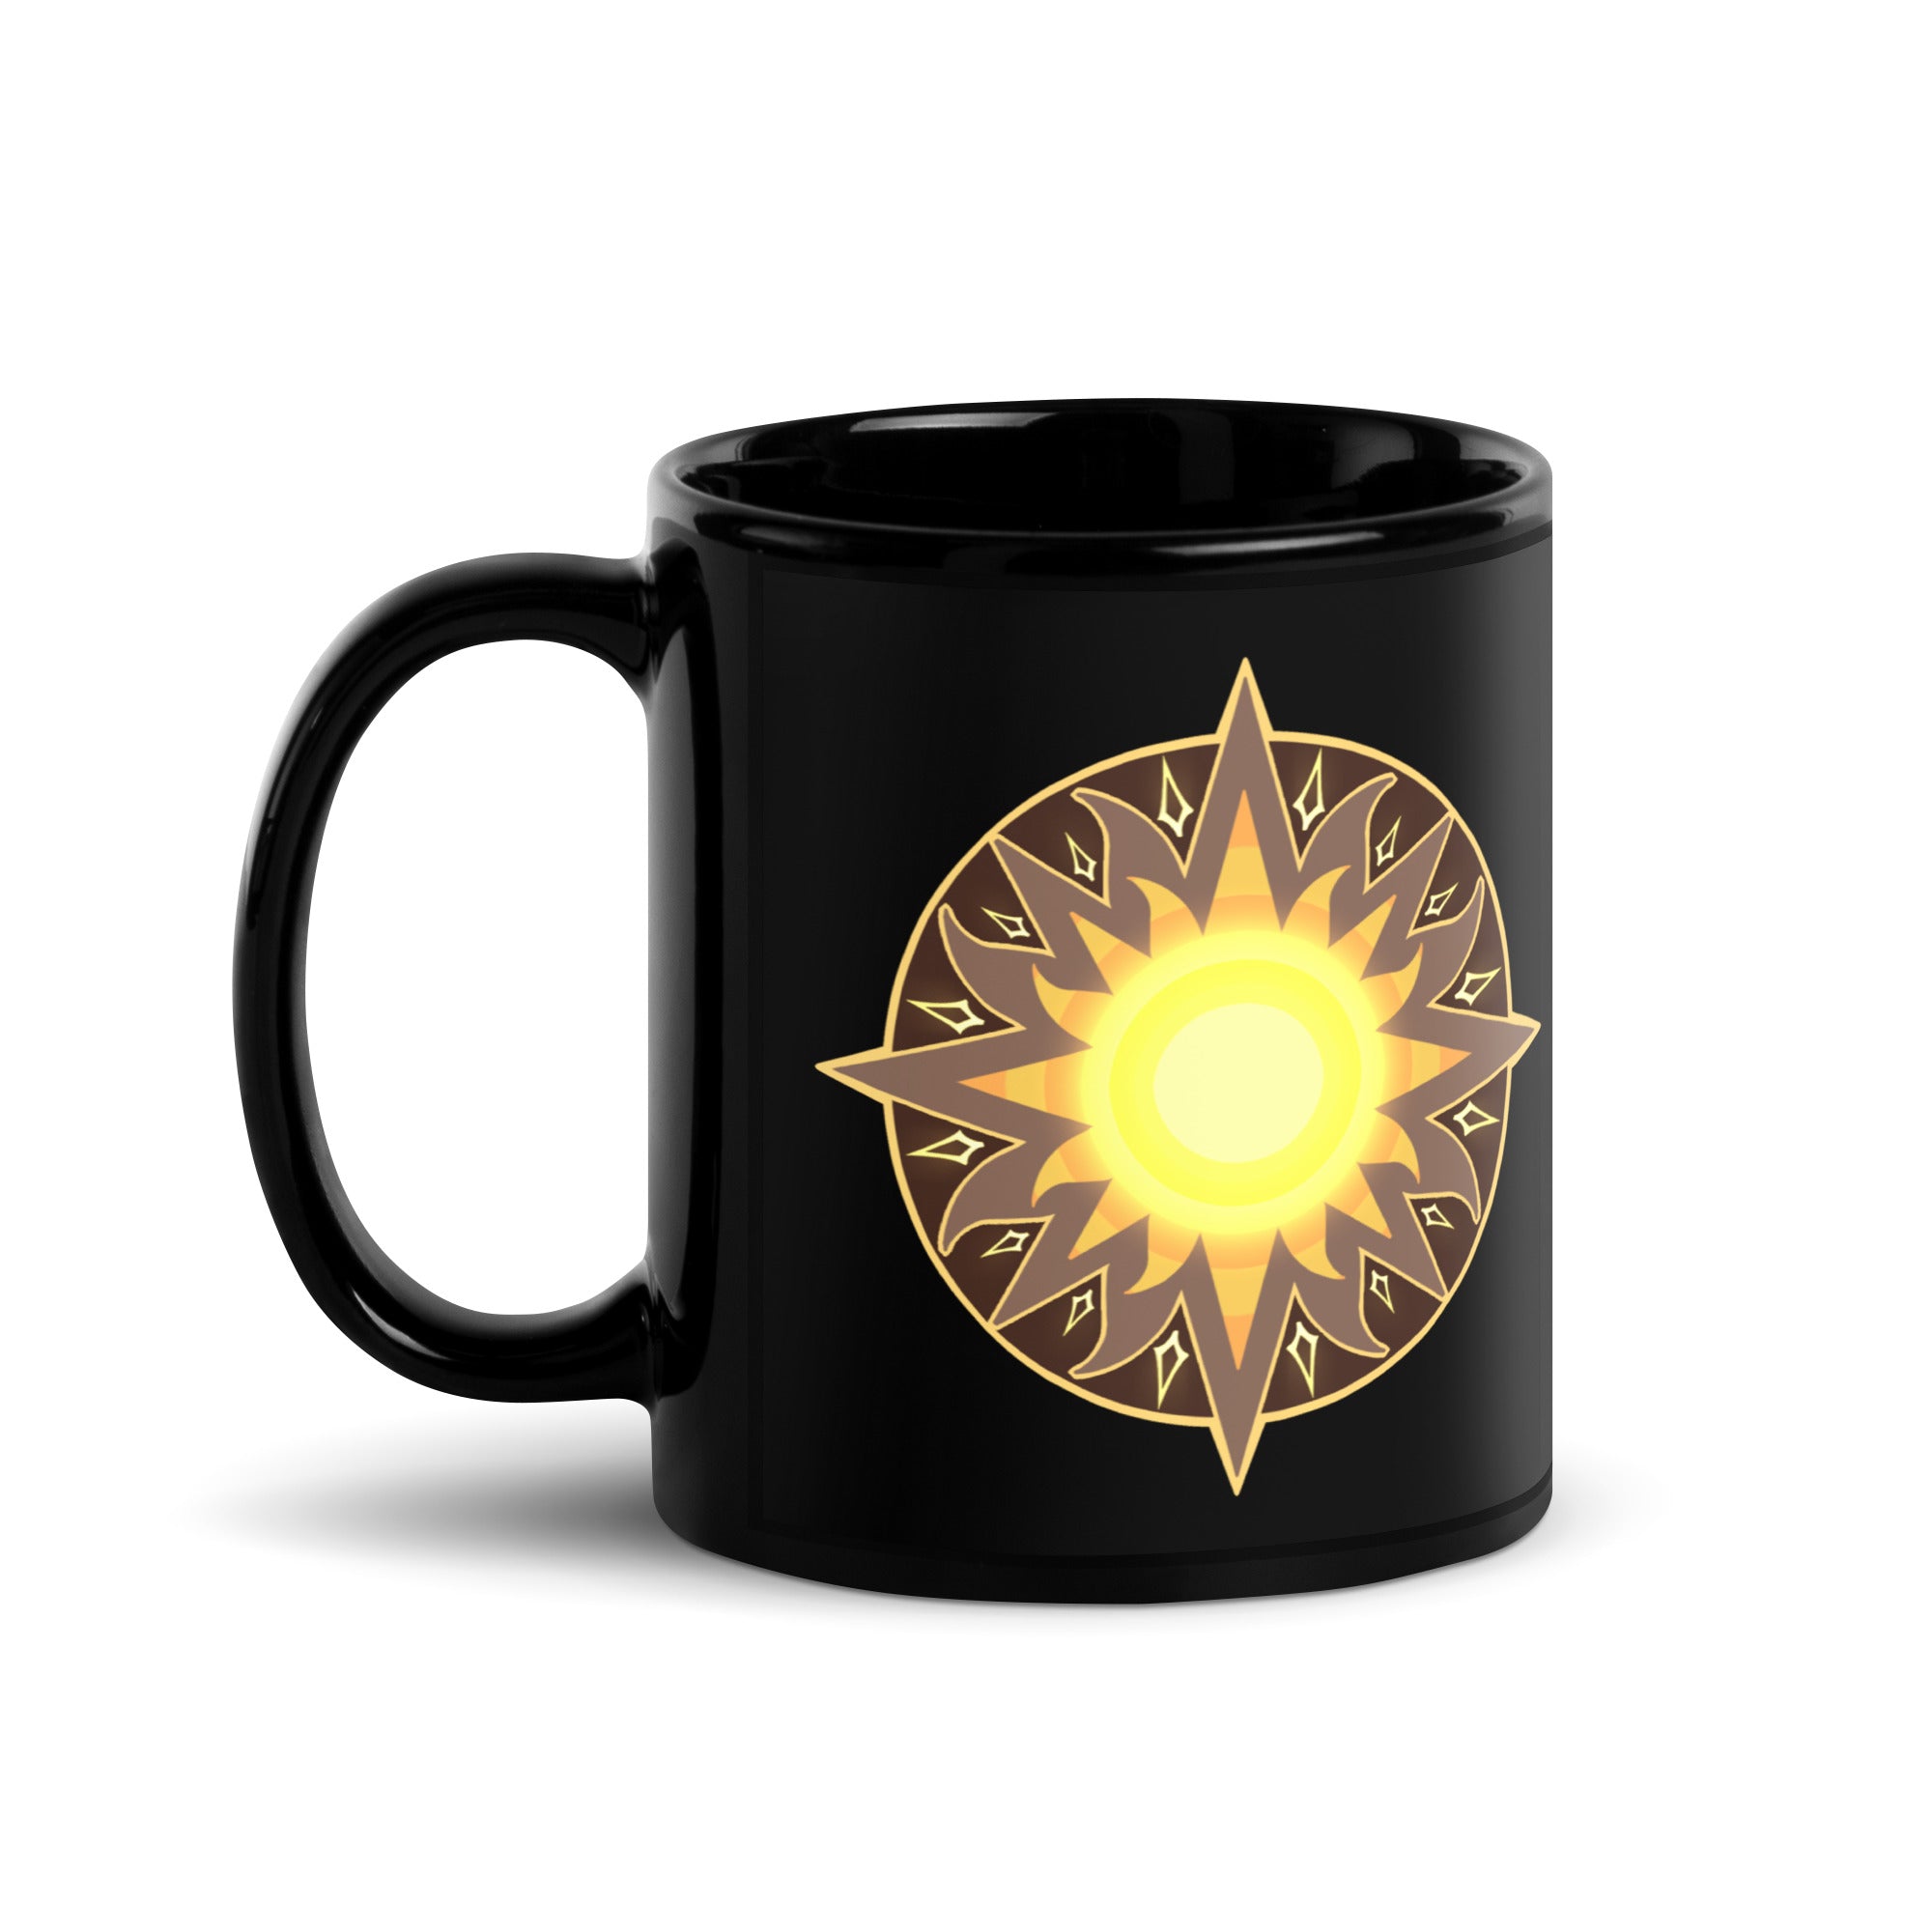 Artorian's Sun Black Glossy Mug